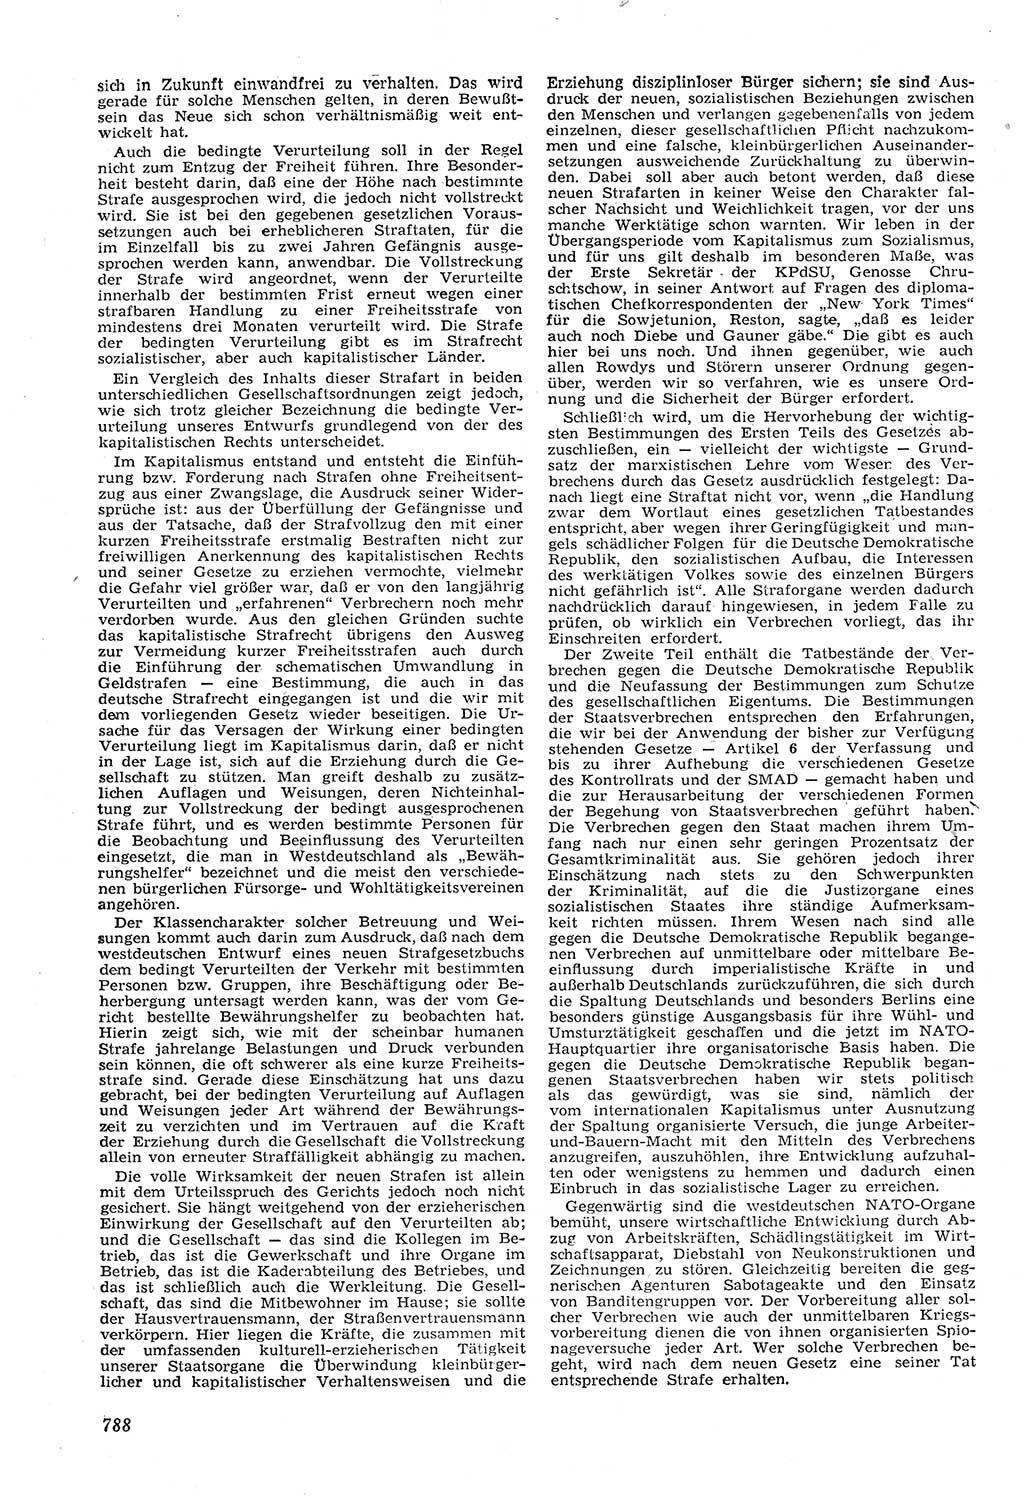 Neue Justiz (NJ), Zeitschrift für Recht und Rechtswissenschaft [Deutsche Demokratische Republik (DDR)], 11. Jahrgang 1957, Seite 788 (NJ DDR 1957, S. 788)